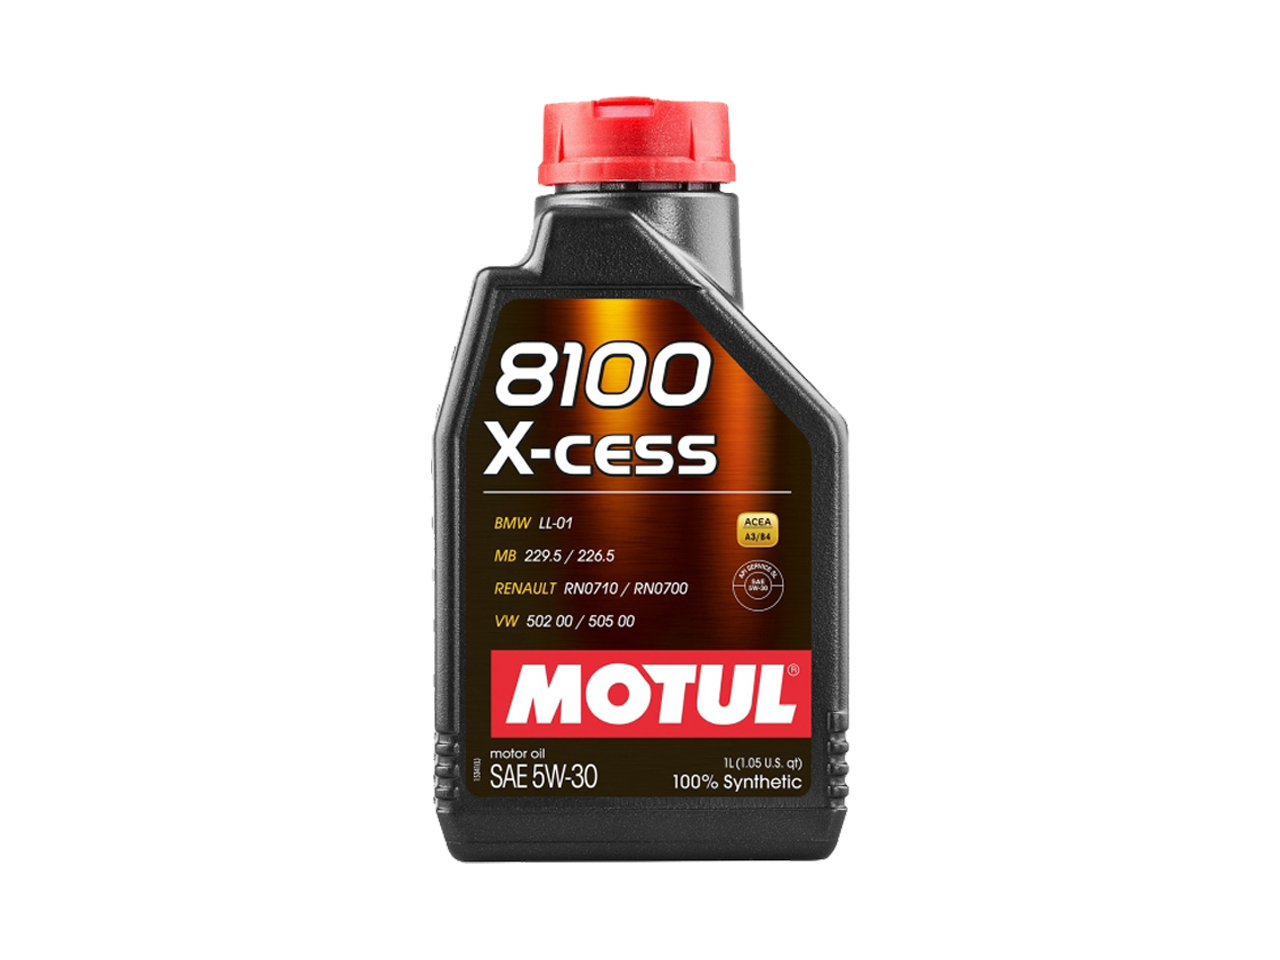 Купить недорого Моторное масло Motul 8100 X-cess в Москве